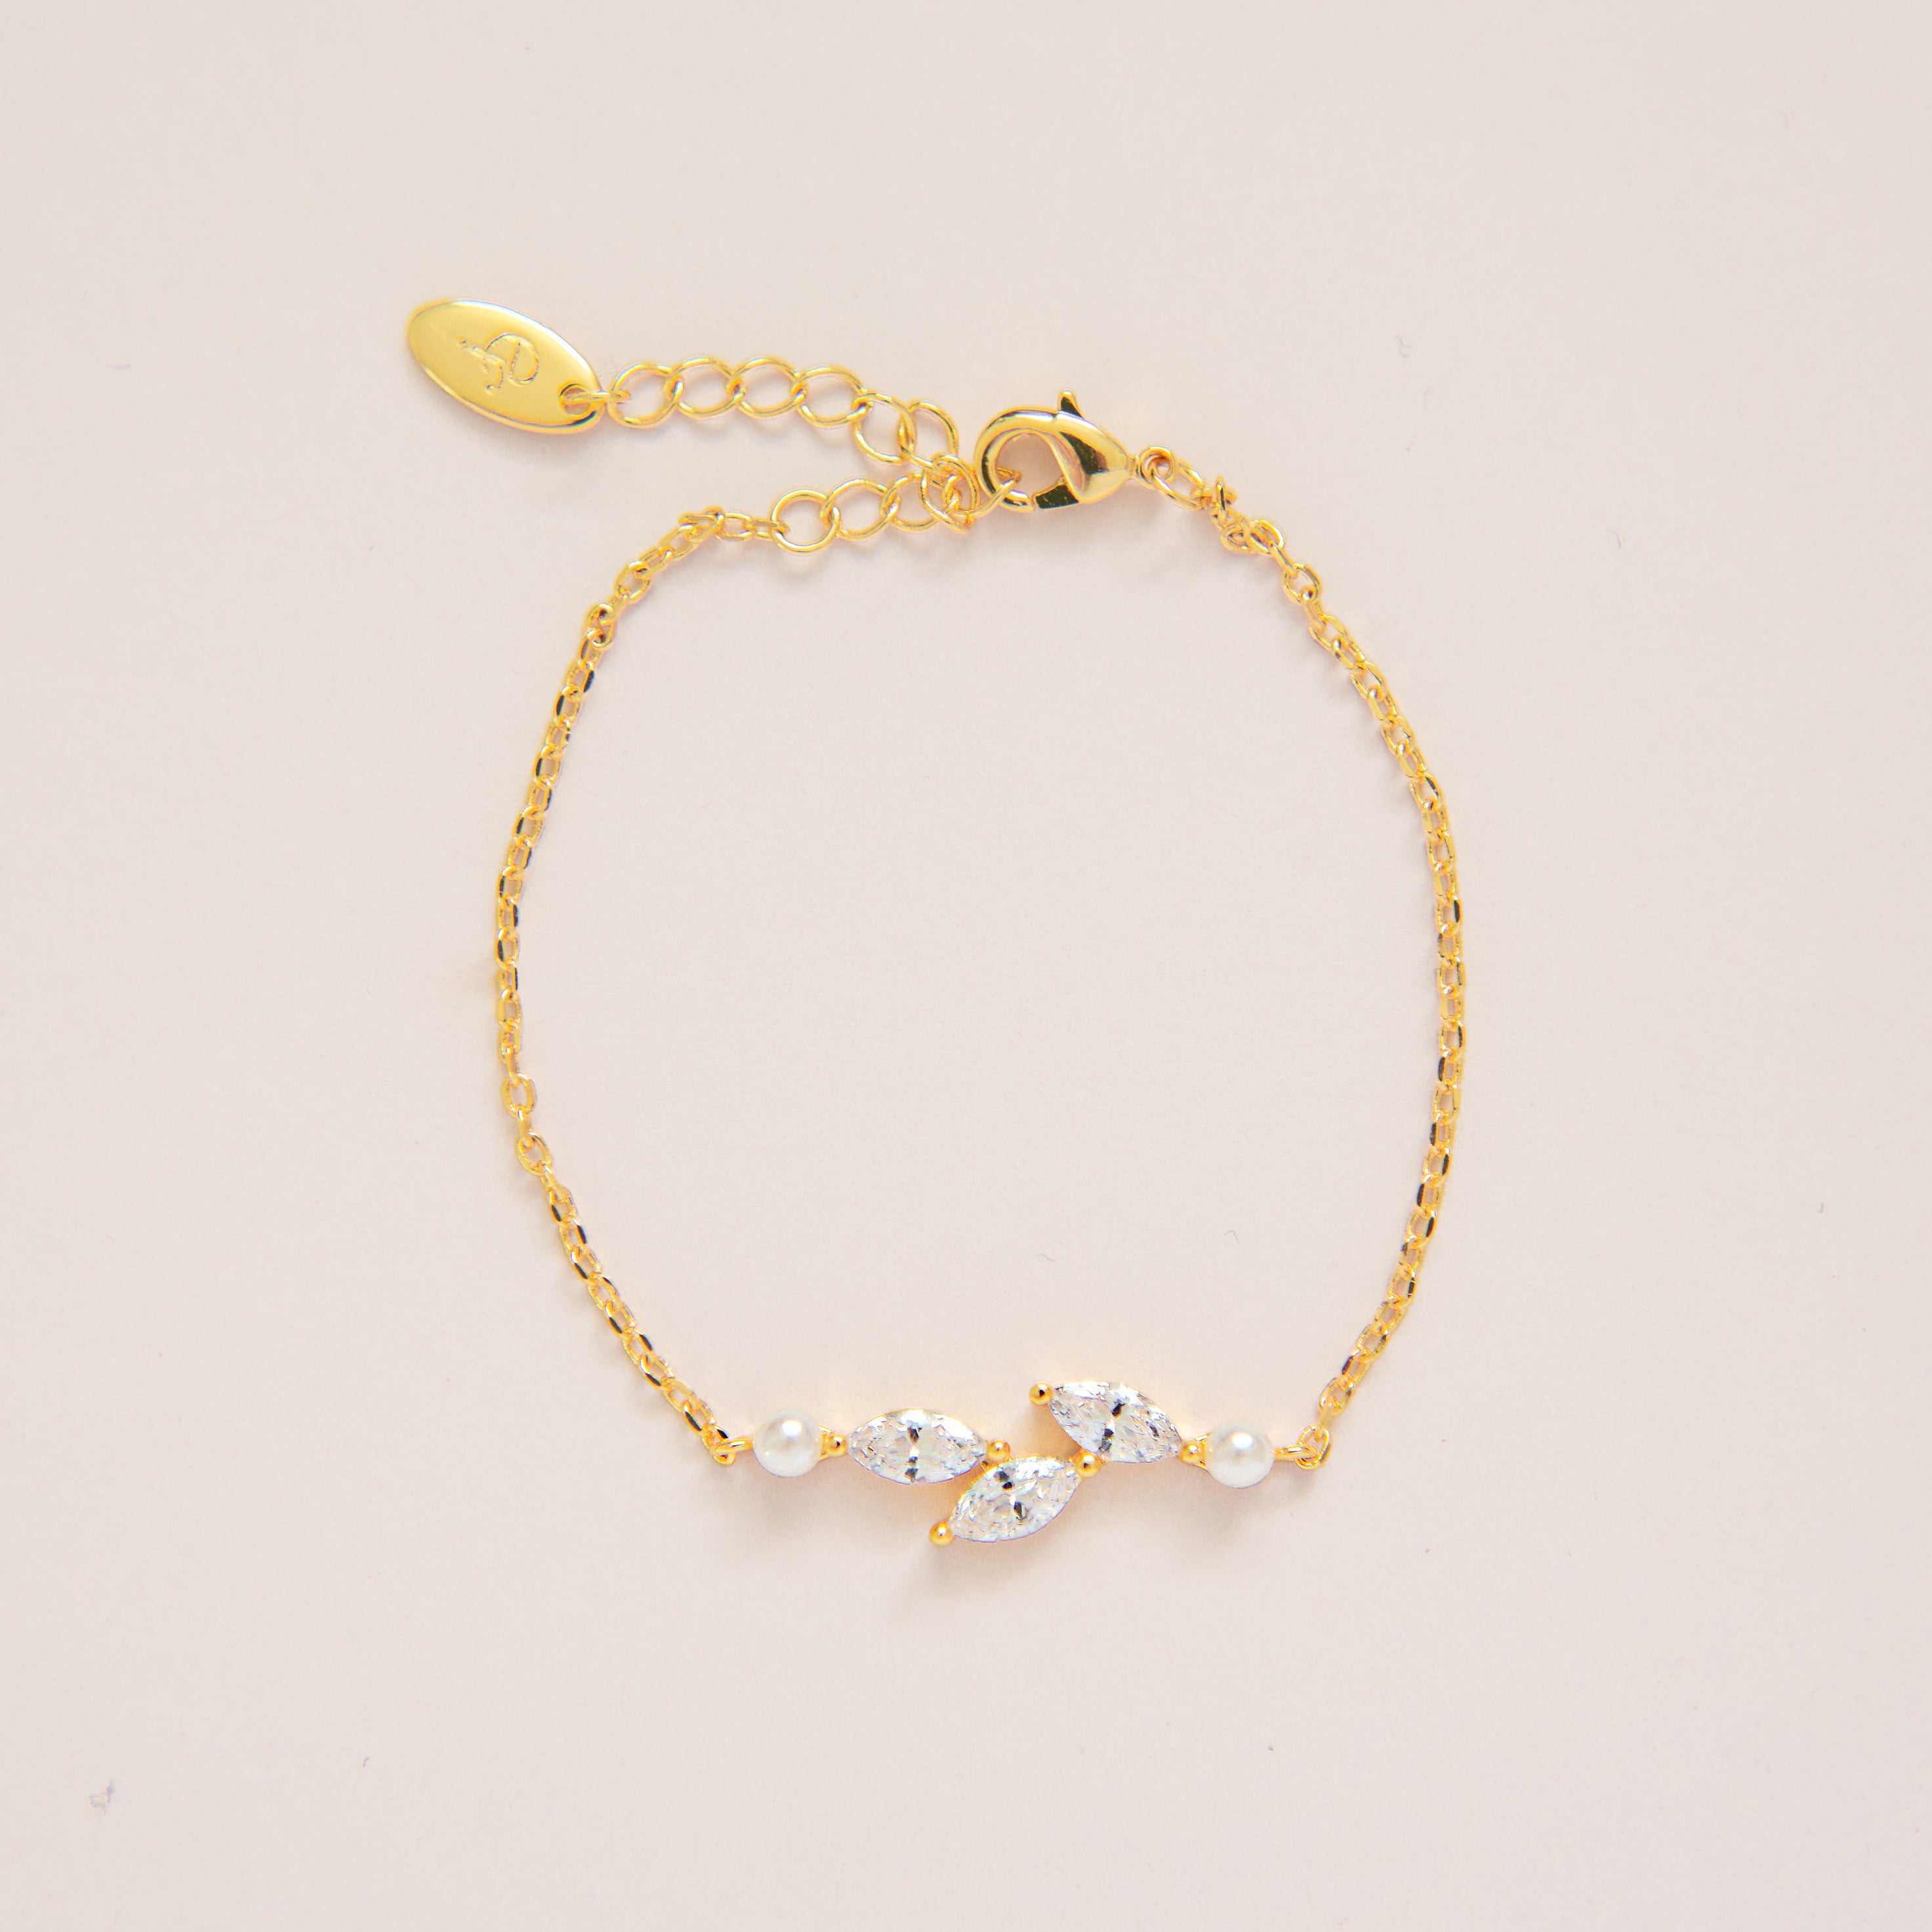 ERYN BRACELET // Silver dainty pearl and cz bracelet